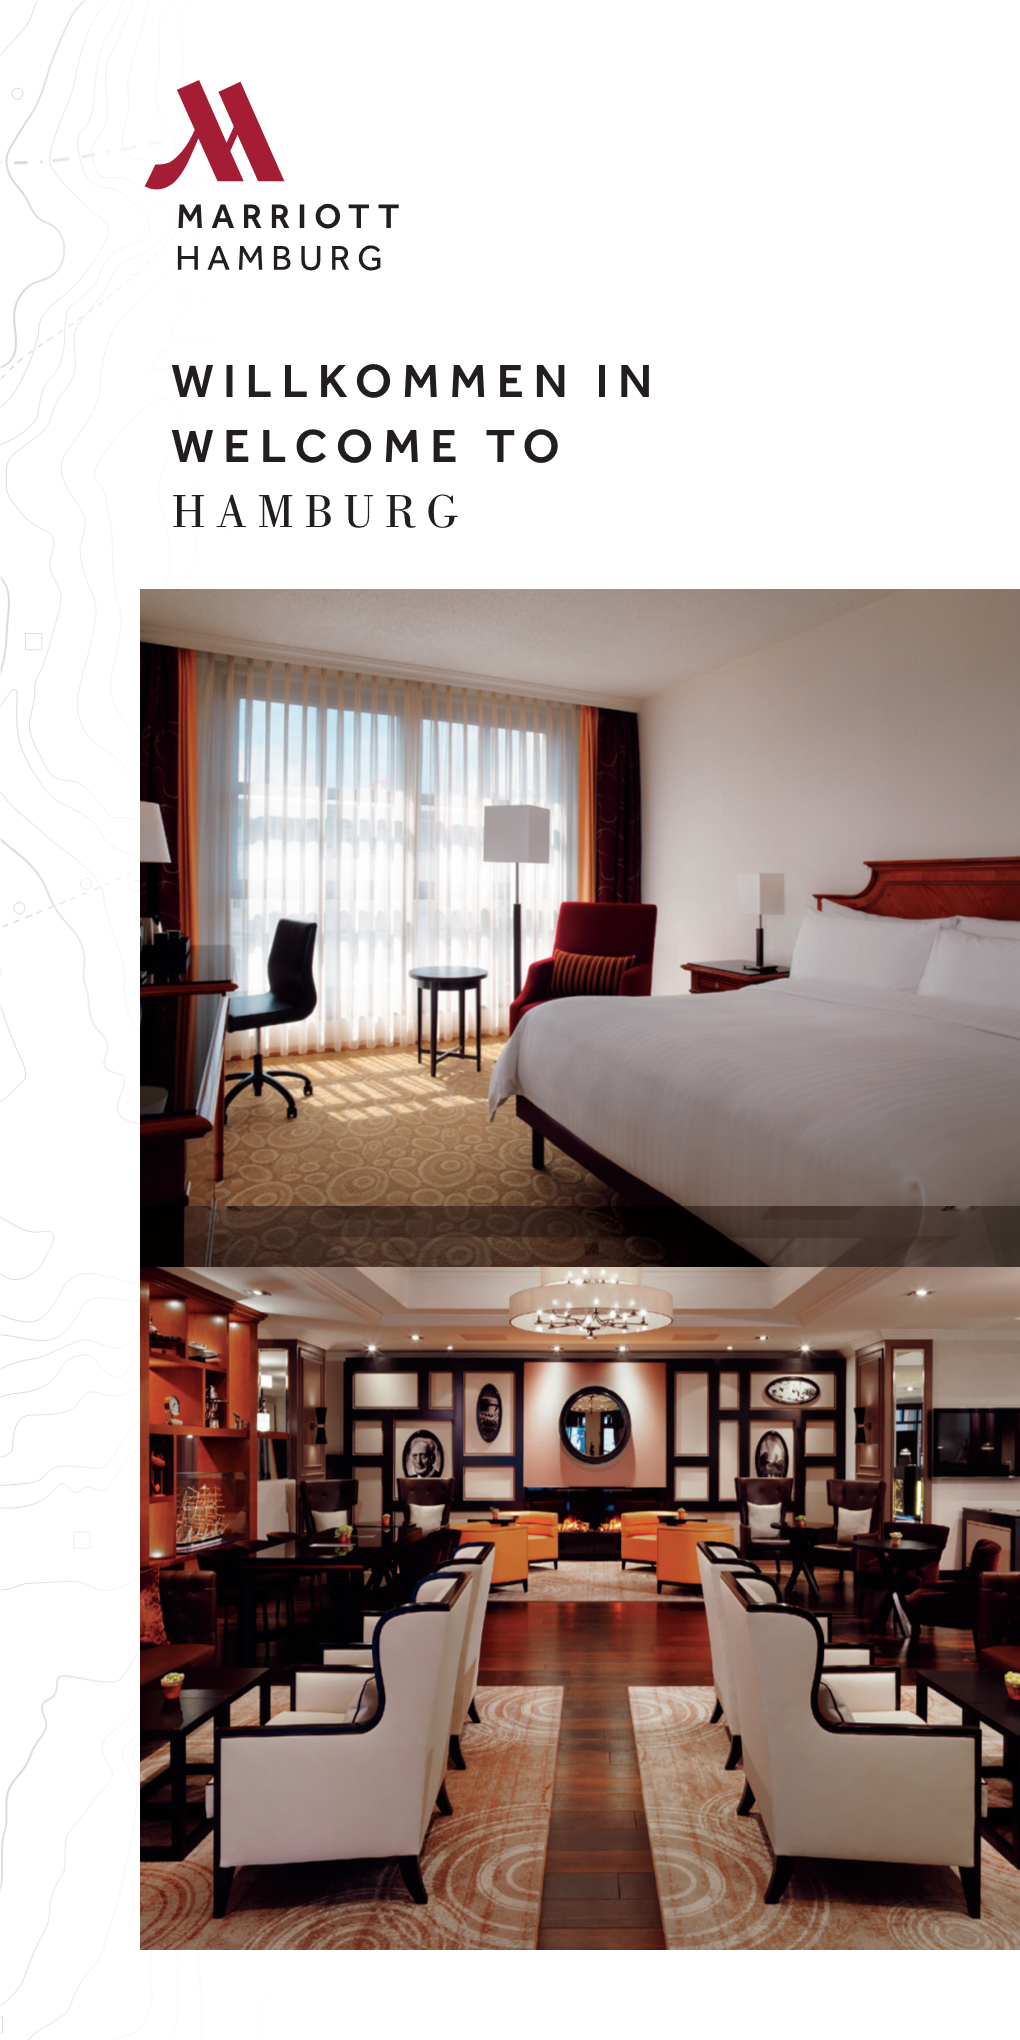 Willkommen in Welcome to Hamburg Hamburg Marriott Hotel Abc-Strasse 52, 20354 Hamburg Hamburgmarriott.Com T: +49 (0)40 35 05 - 0